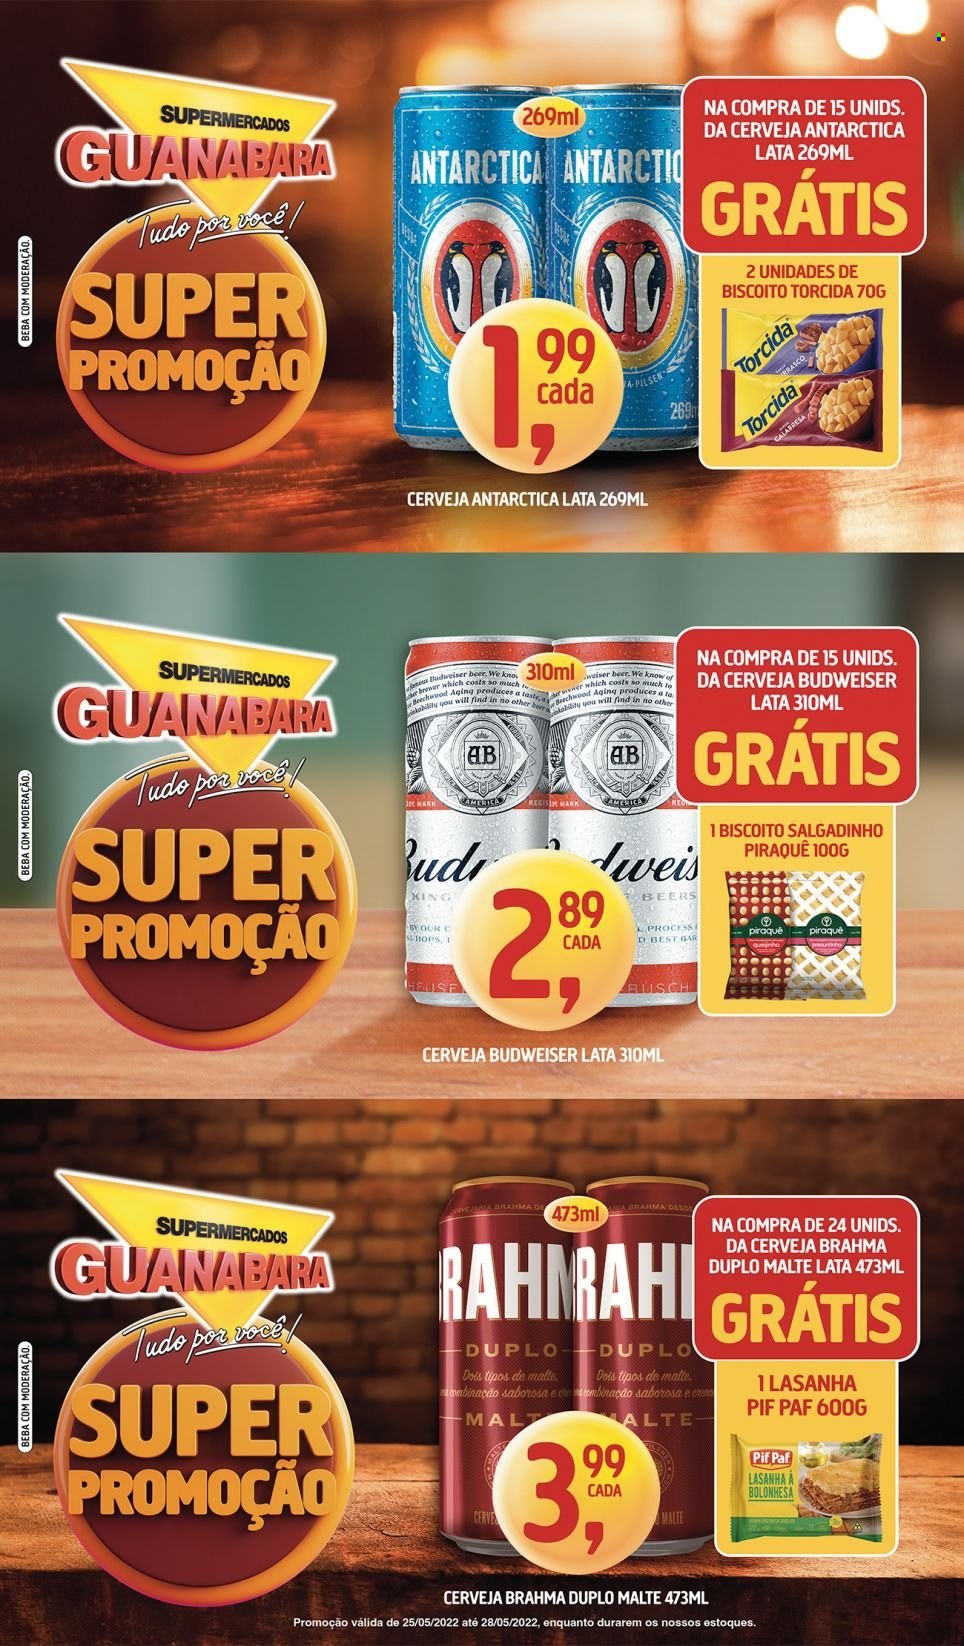 thumbnail - Folheto Supermercados Guanabara - 25/05/2022 - 28/05/2022 - Produtos em promoção - Budweiser, Brahma, Antárctica, cerveja, lasanha, Pif Paf, biscoito, salgadinho. Página 6.